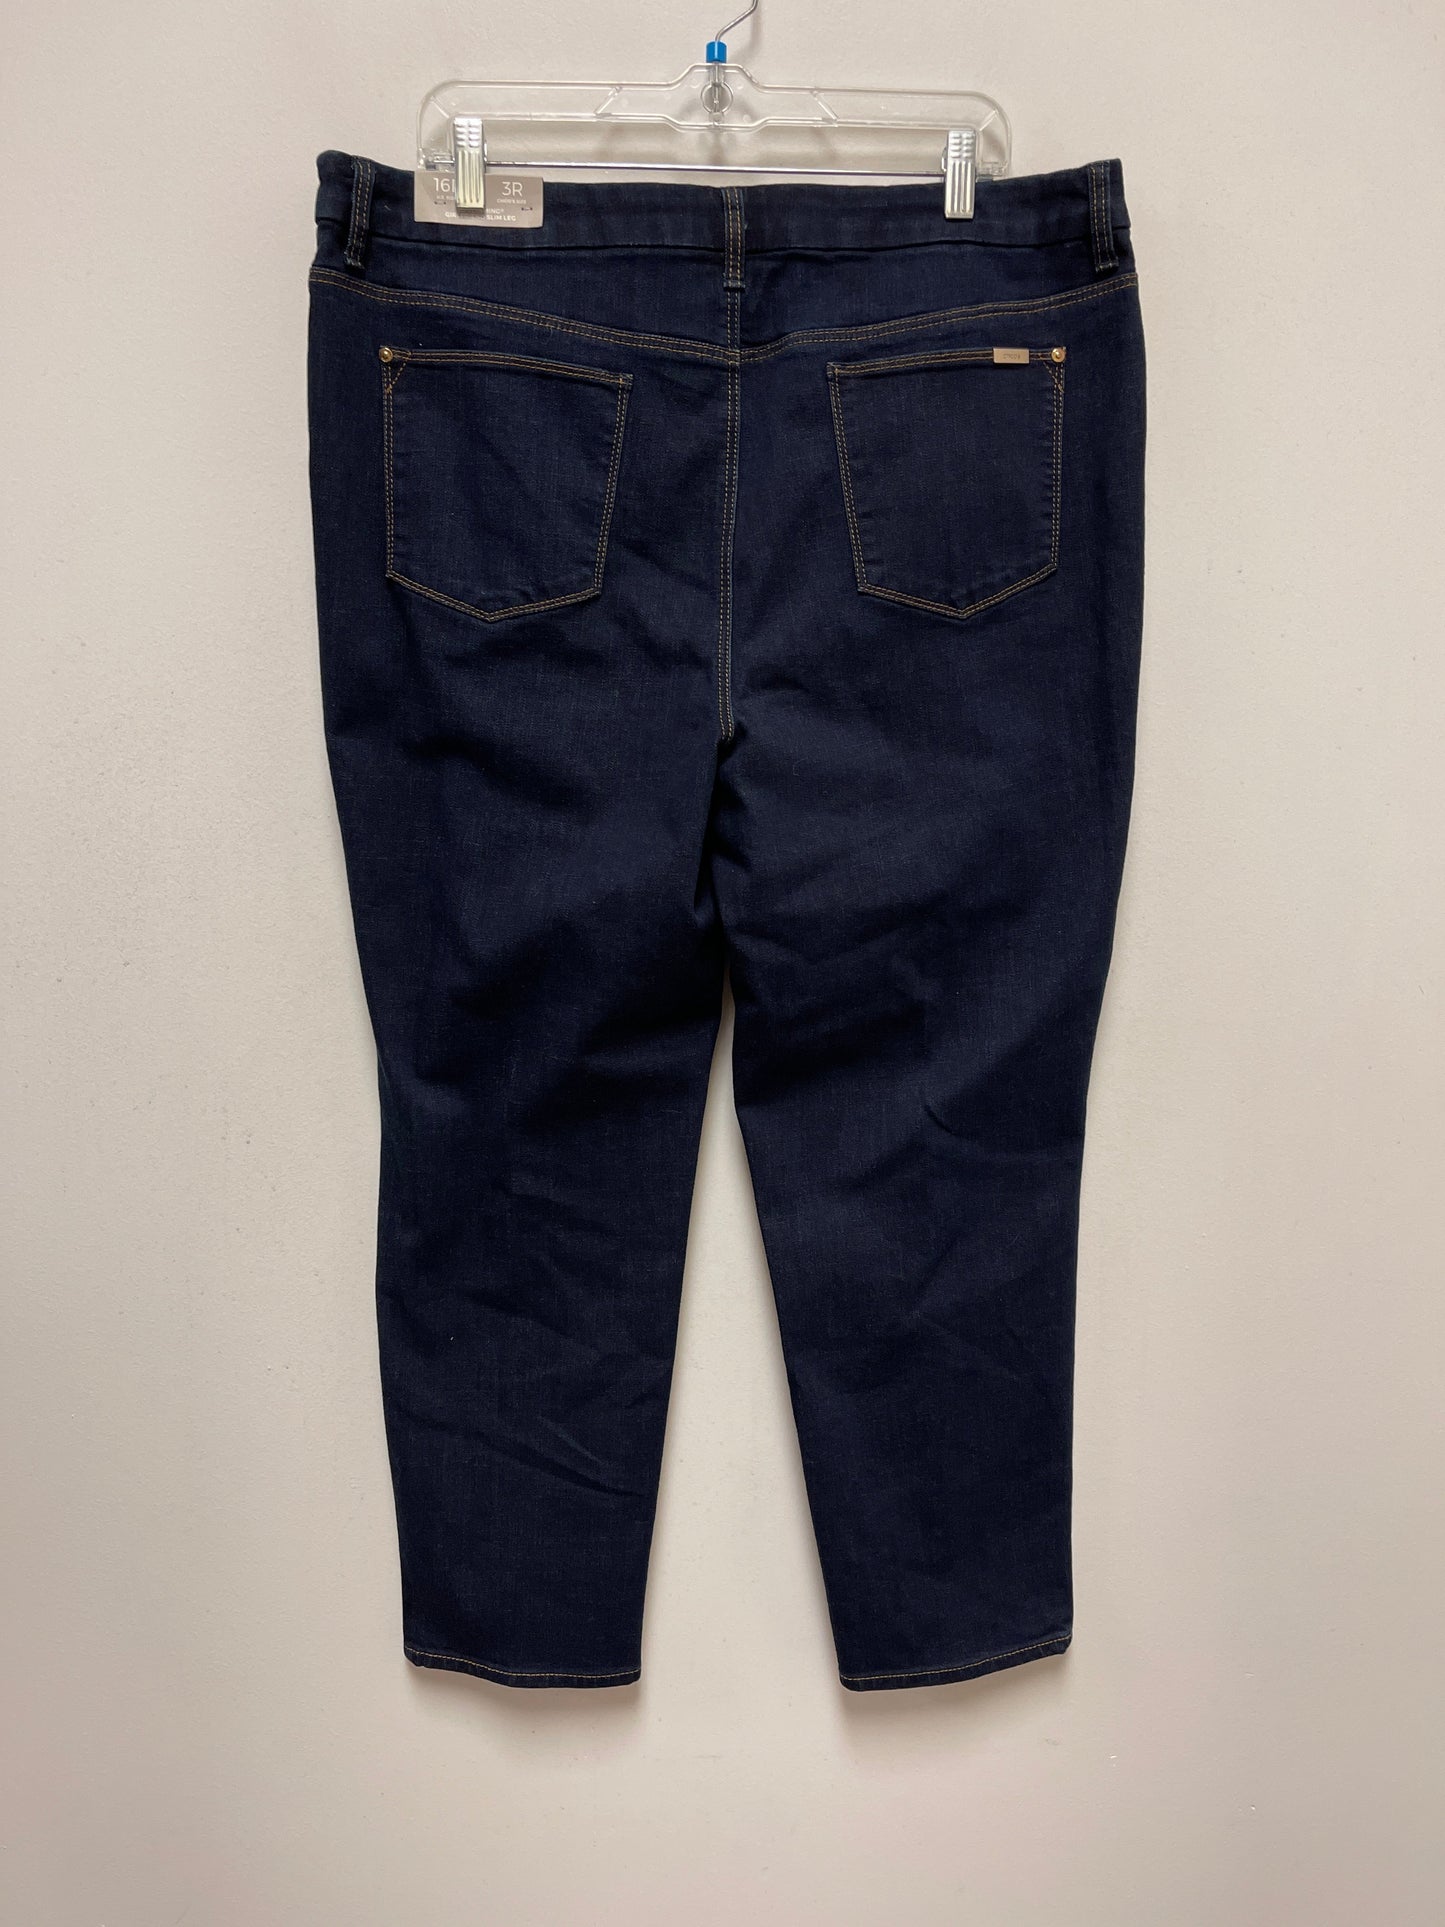 Blue Denim Jeans Skinny Chicos, Size 16